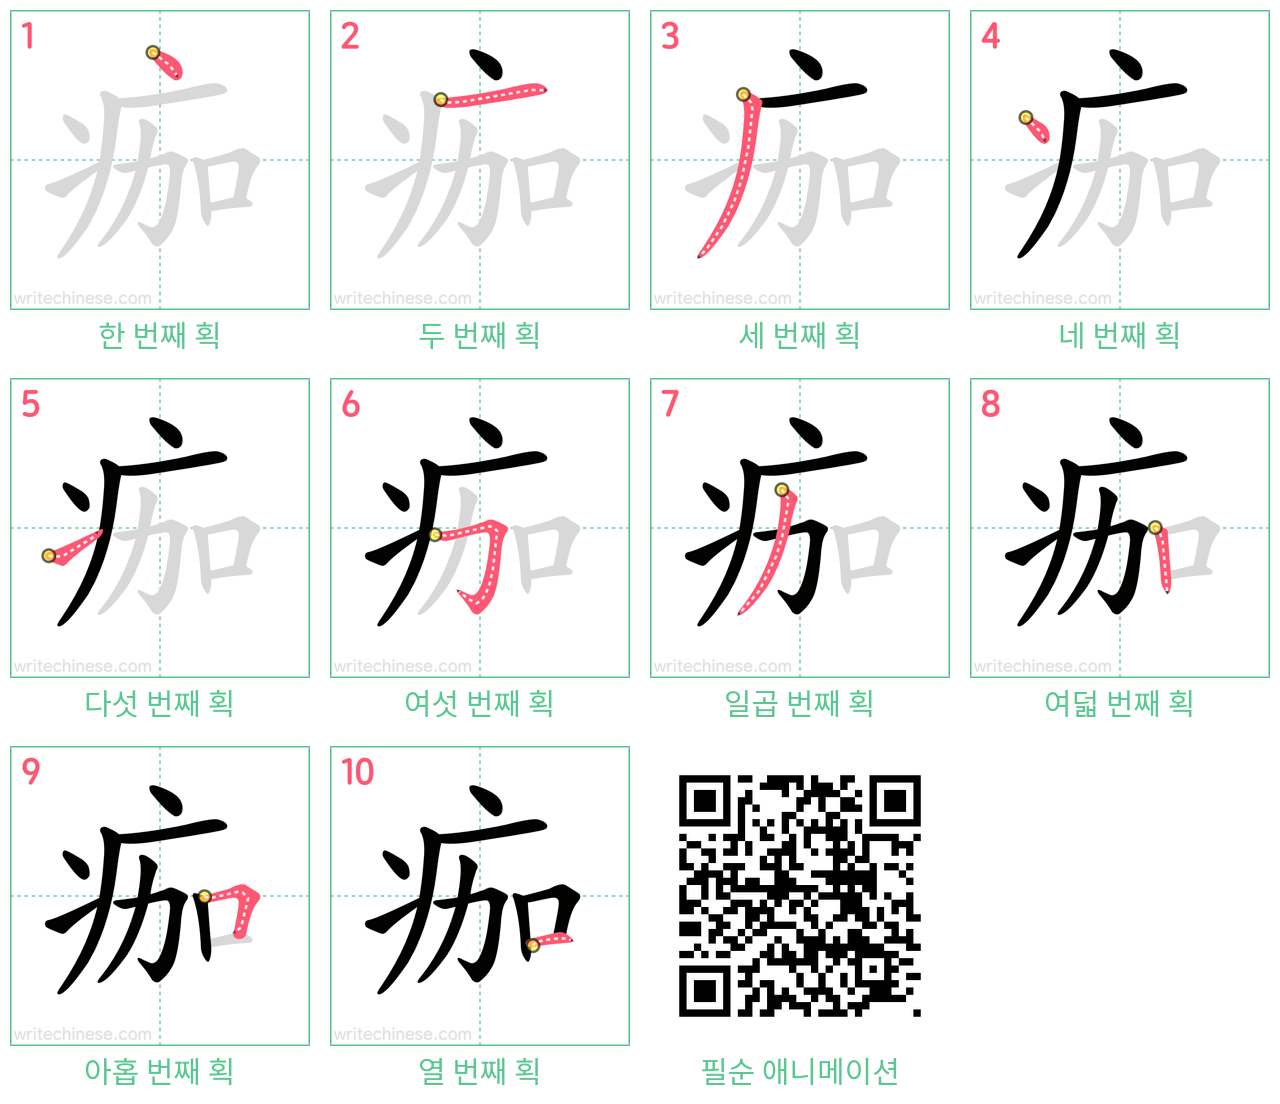 痂 step-by-step stroke order diagrams